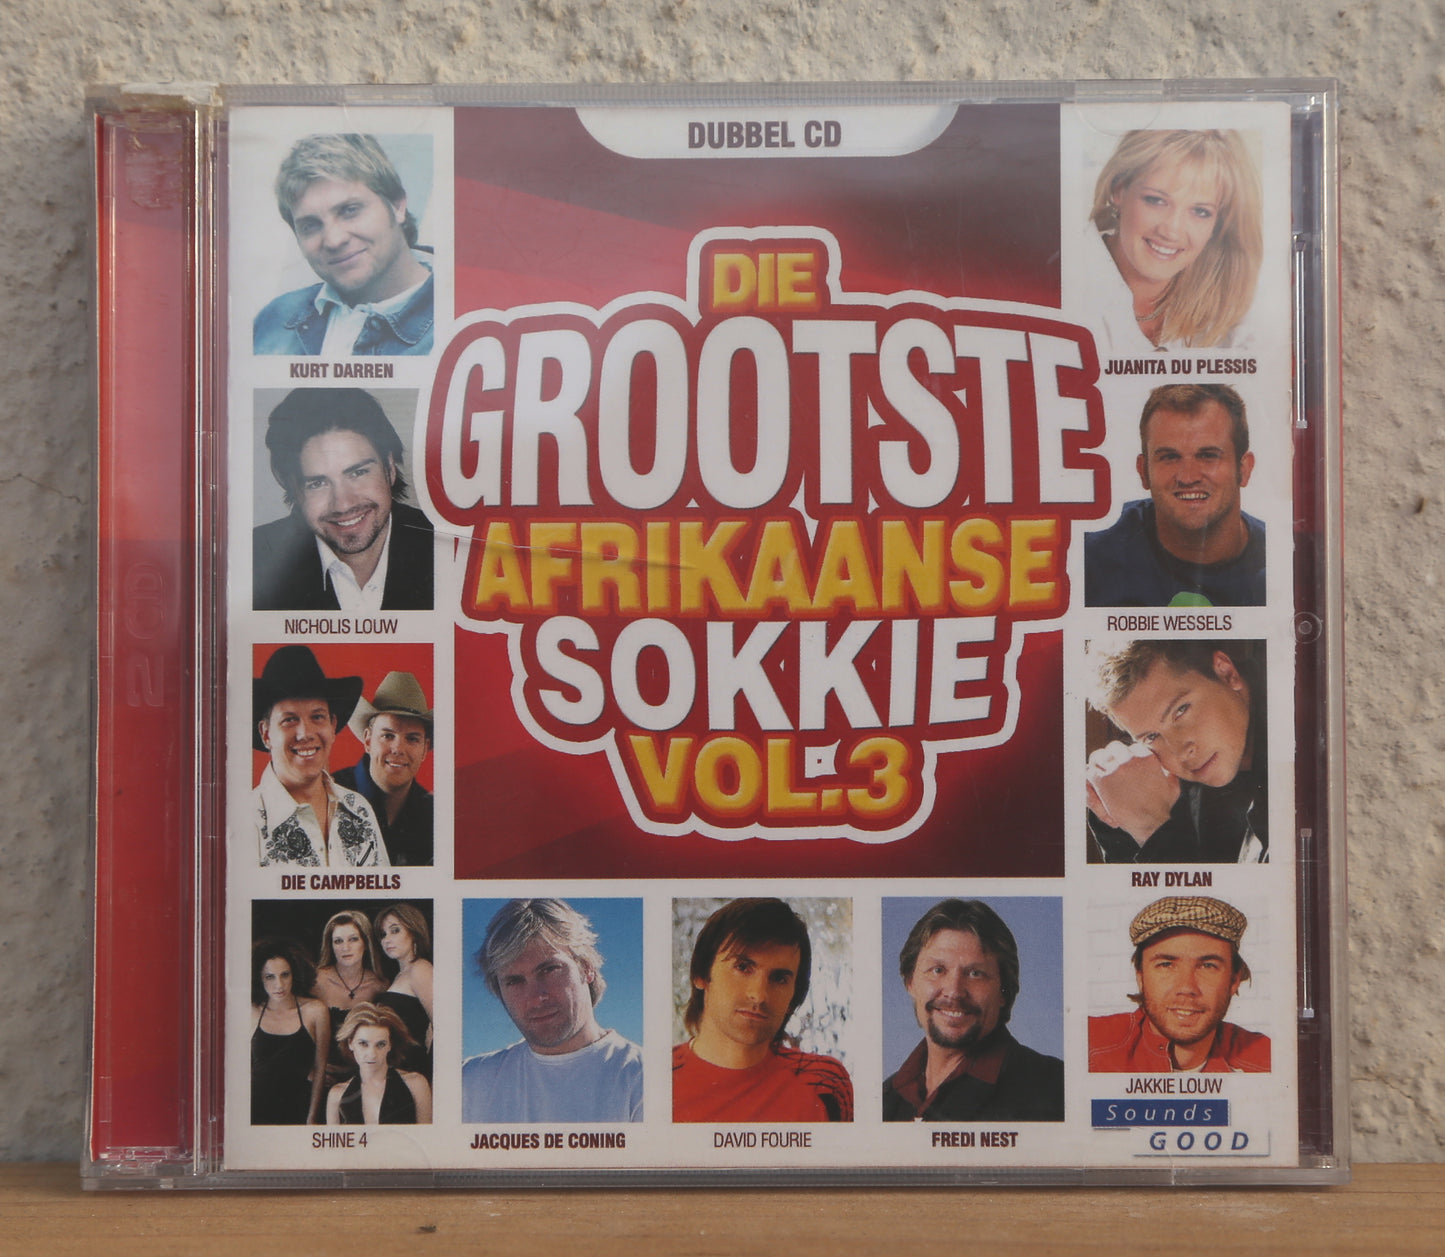 Die Grootste Afrikaans Sokkie Volume 3 (cd)